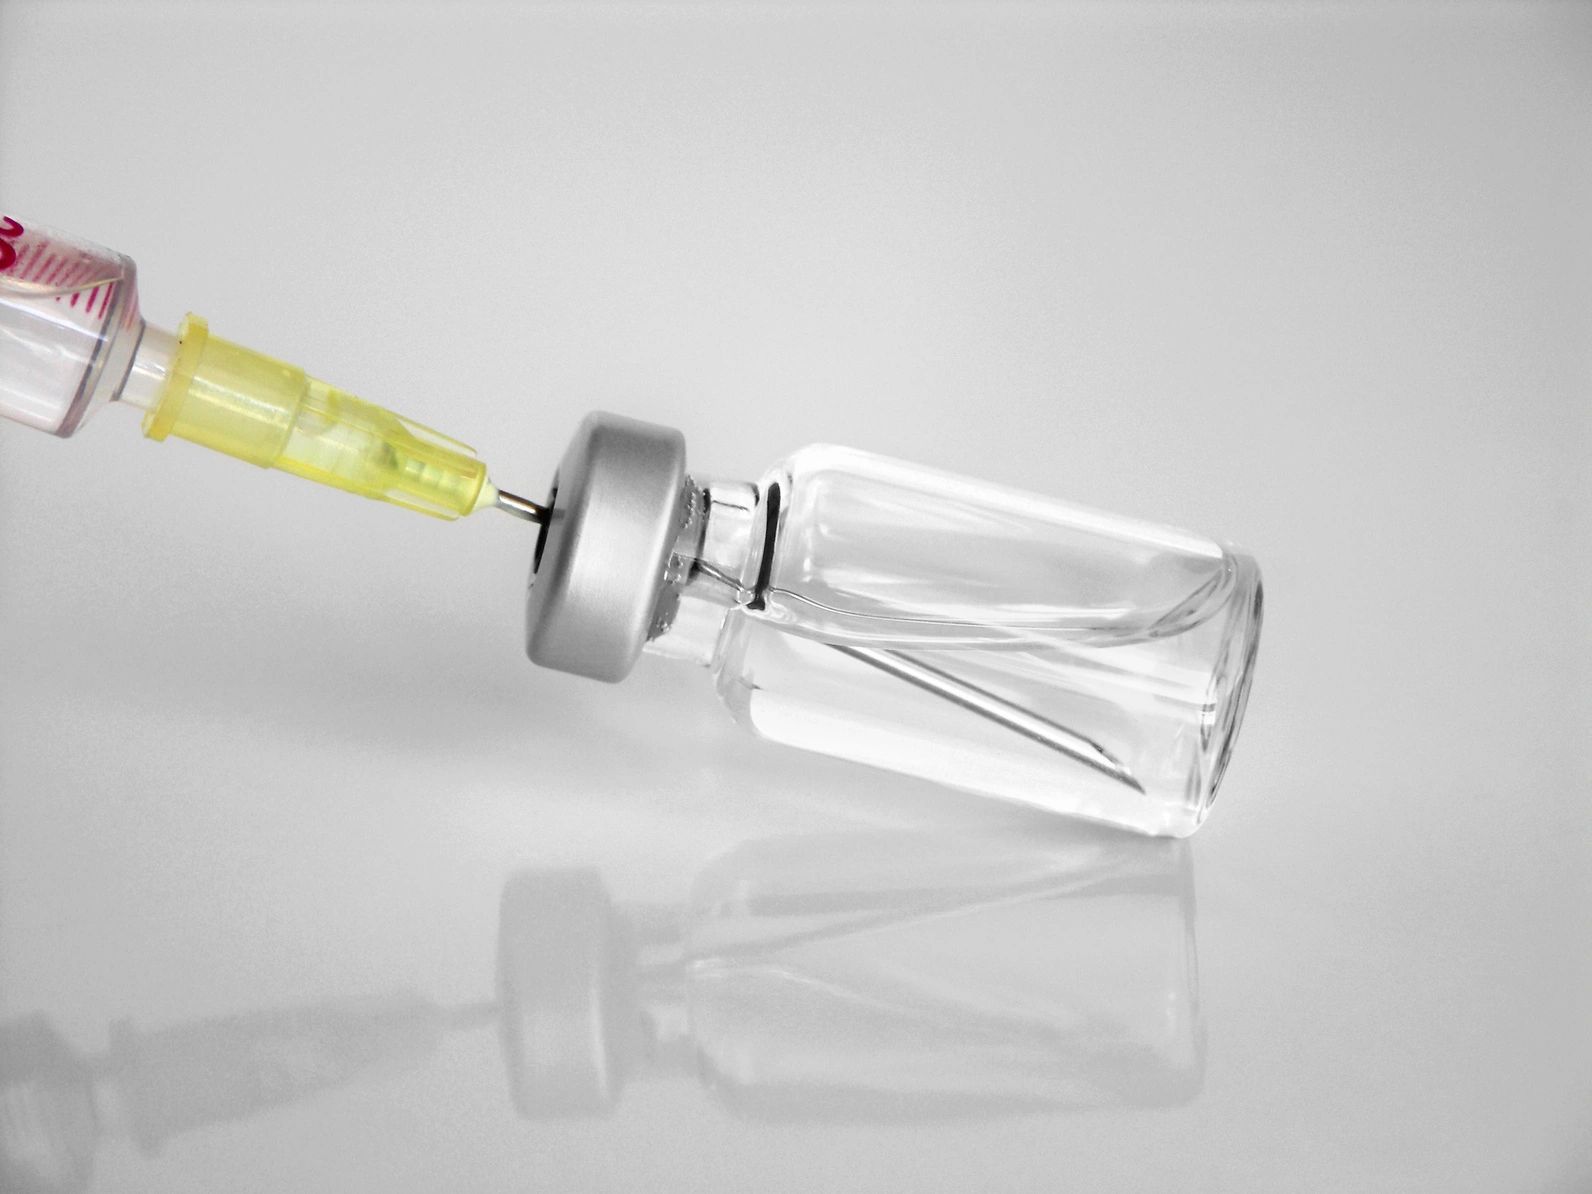 Syringe in vial